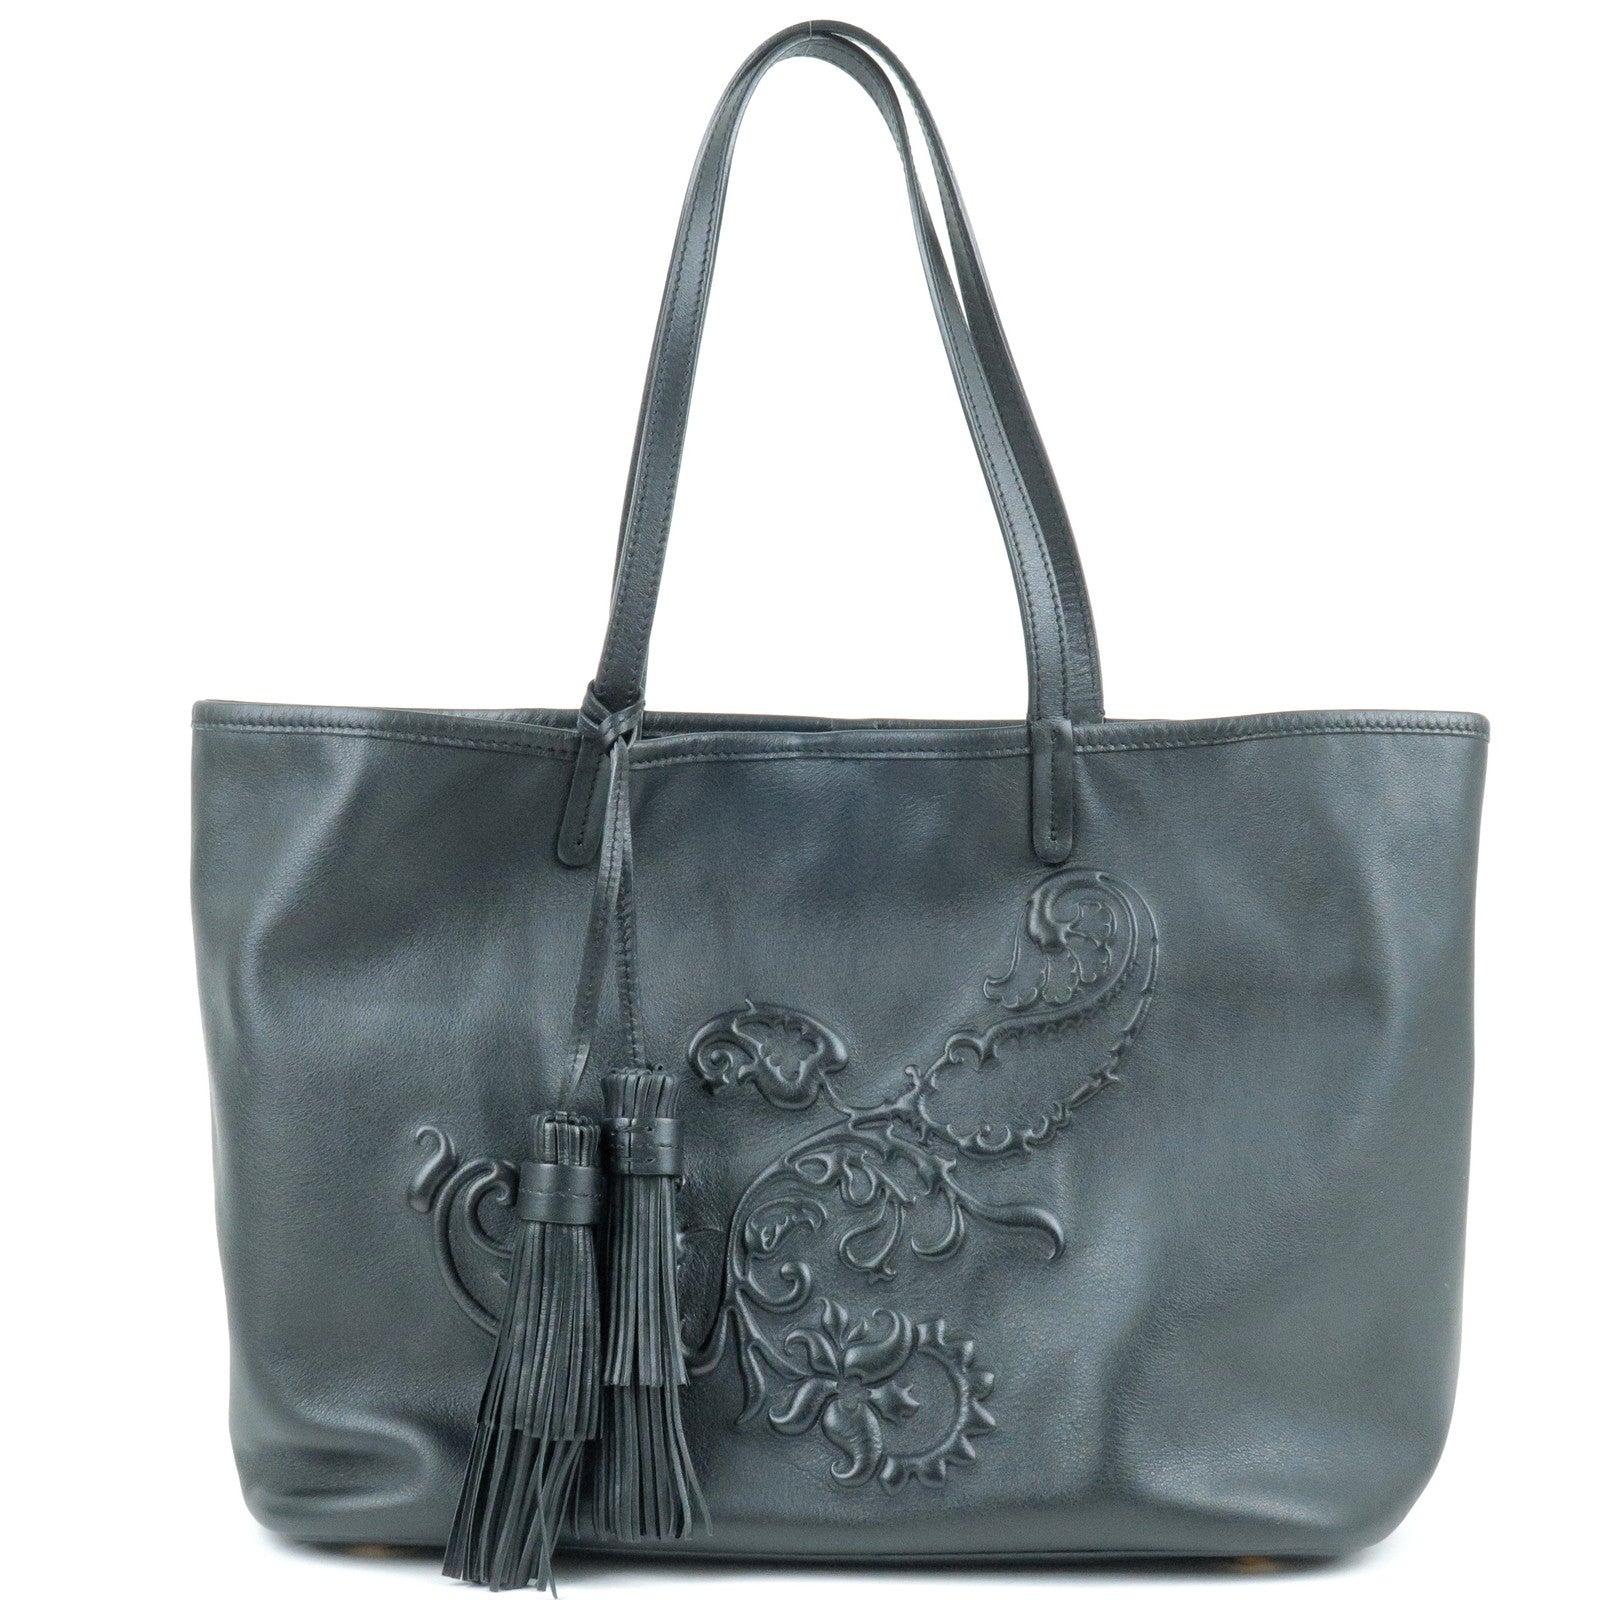 ETRO-Leather-Embossed-Print-Tote-Bag-Shoulder-Bag-Black